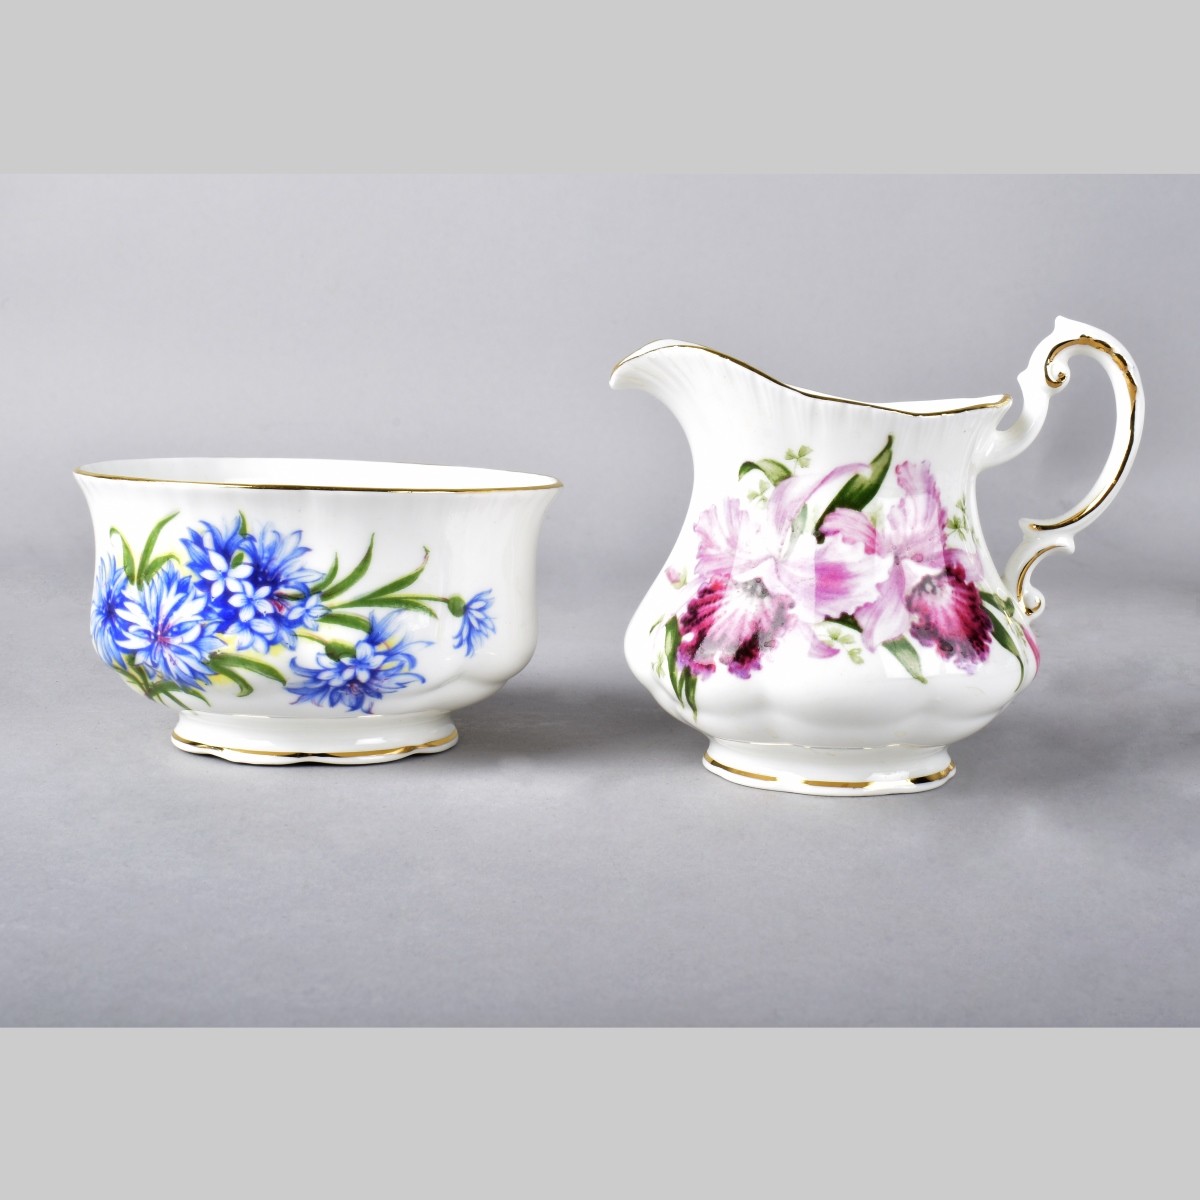 Vintage Assorted Porcelain Tableware